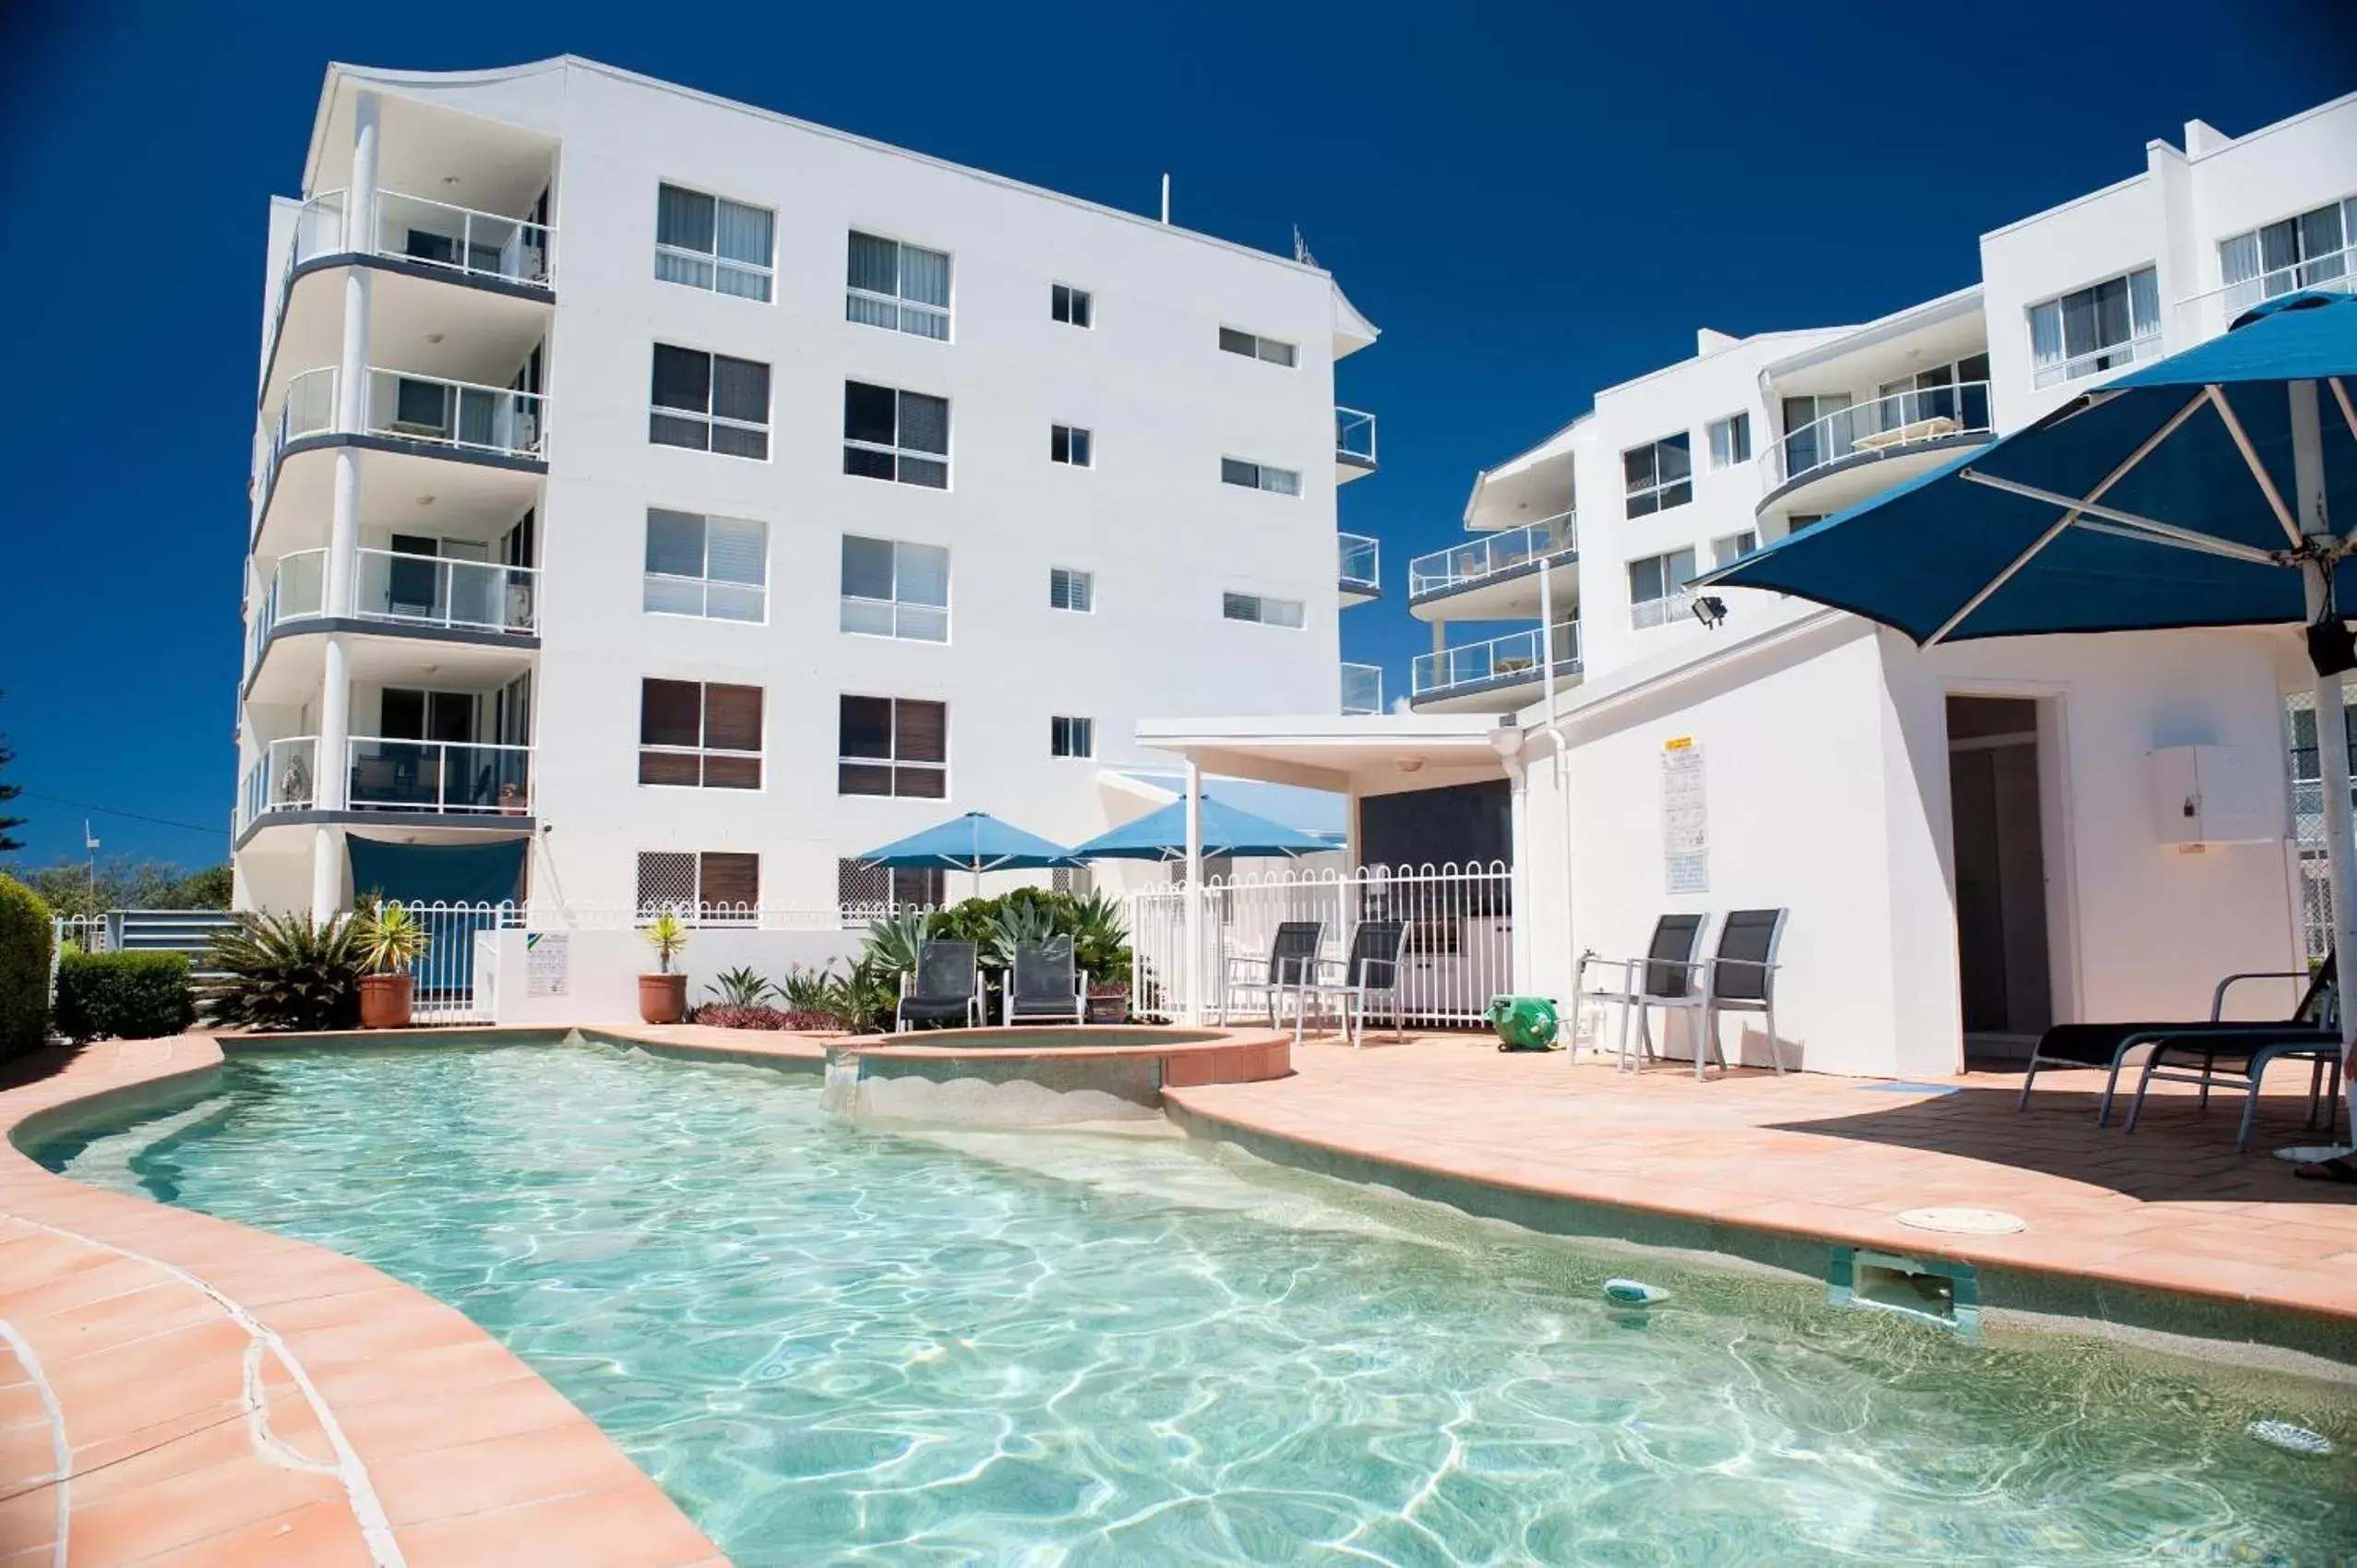 Swimming pool, Property Building in Bargara Blue Resort